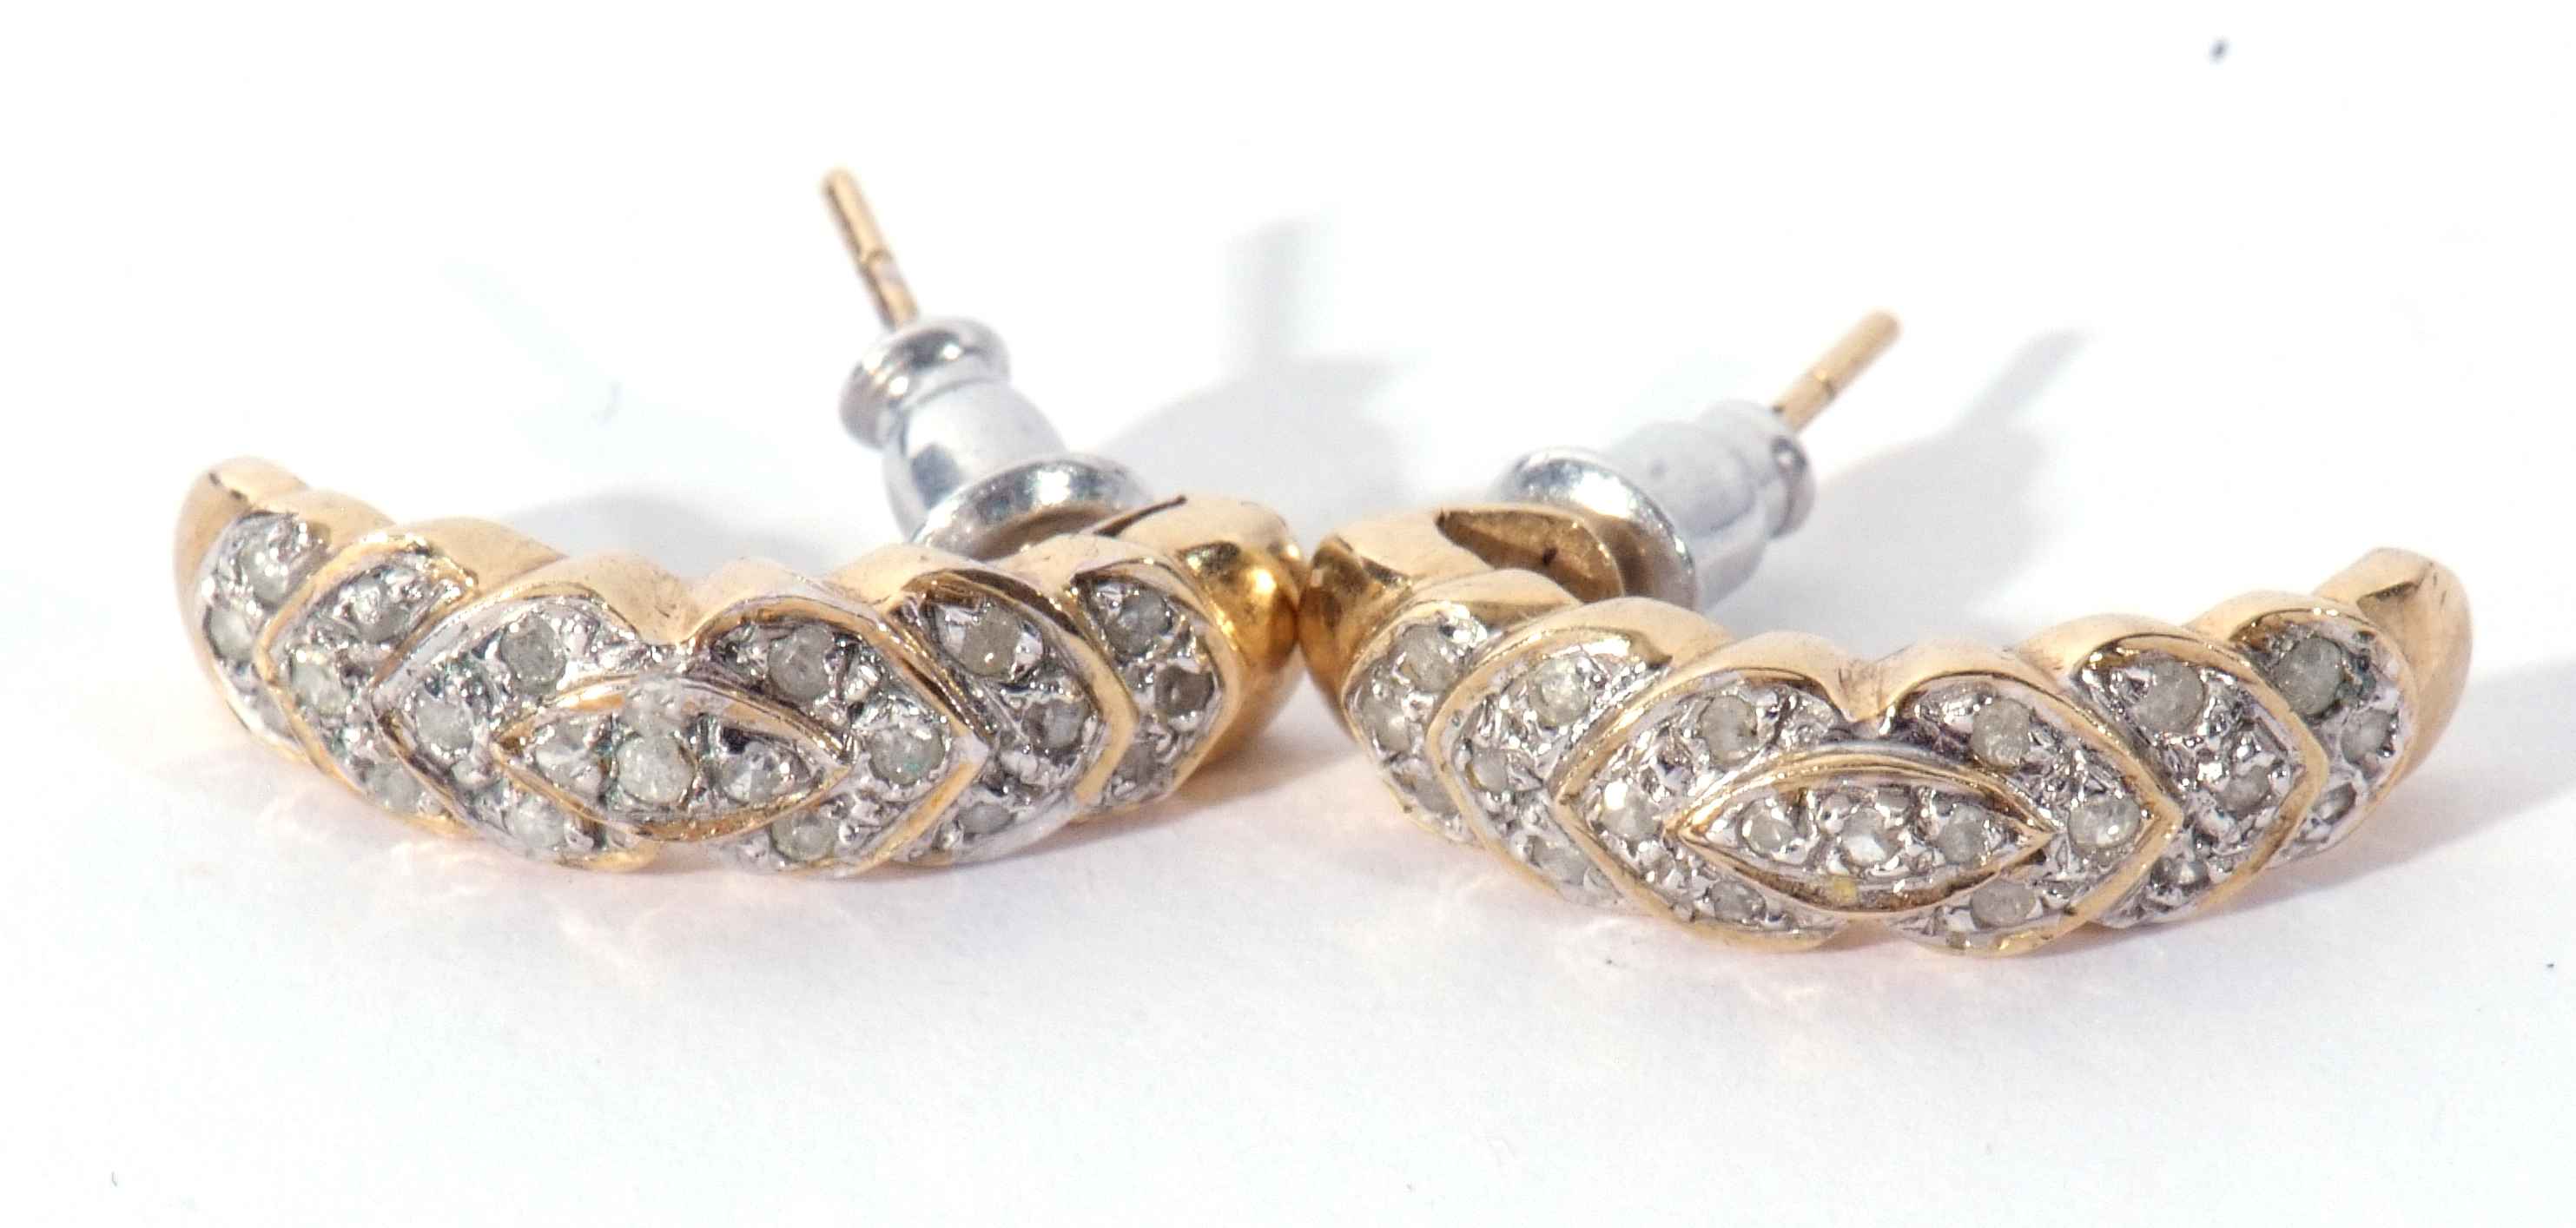 Pair of 9ct gold diamond set half hoop earrings, post fittings - Image 4 of 6